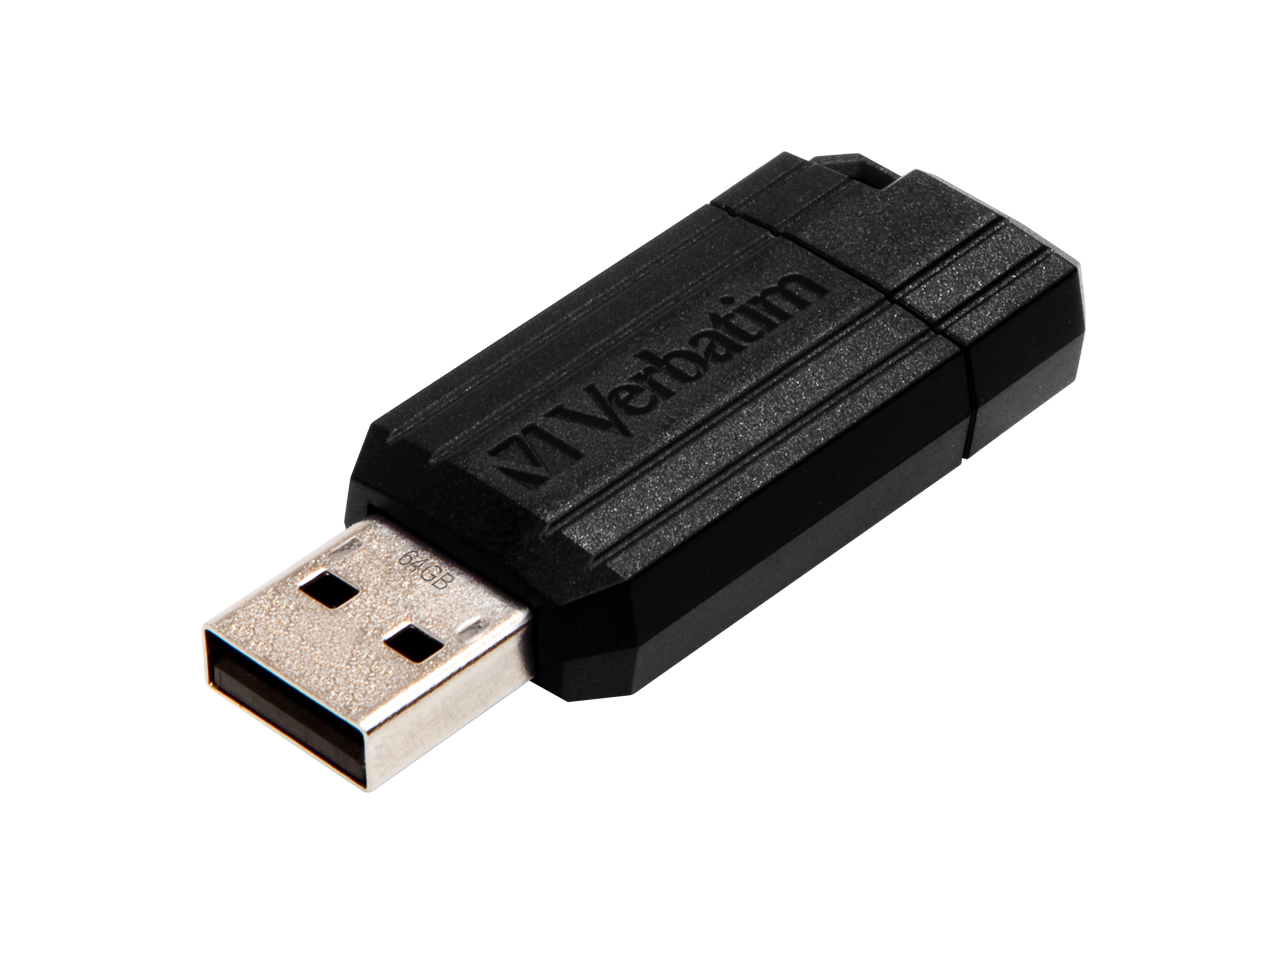 VERBATIM PINSTRIPE USB STICK 64GB 49065 12MB/s USB 2.0 schwarz 1